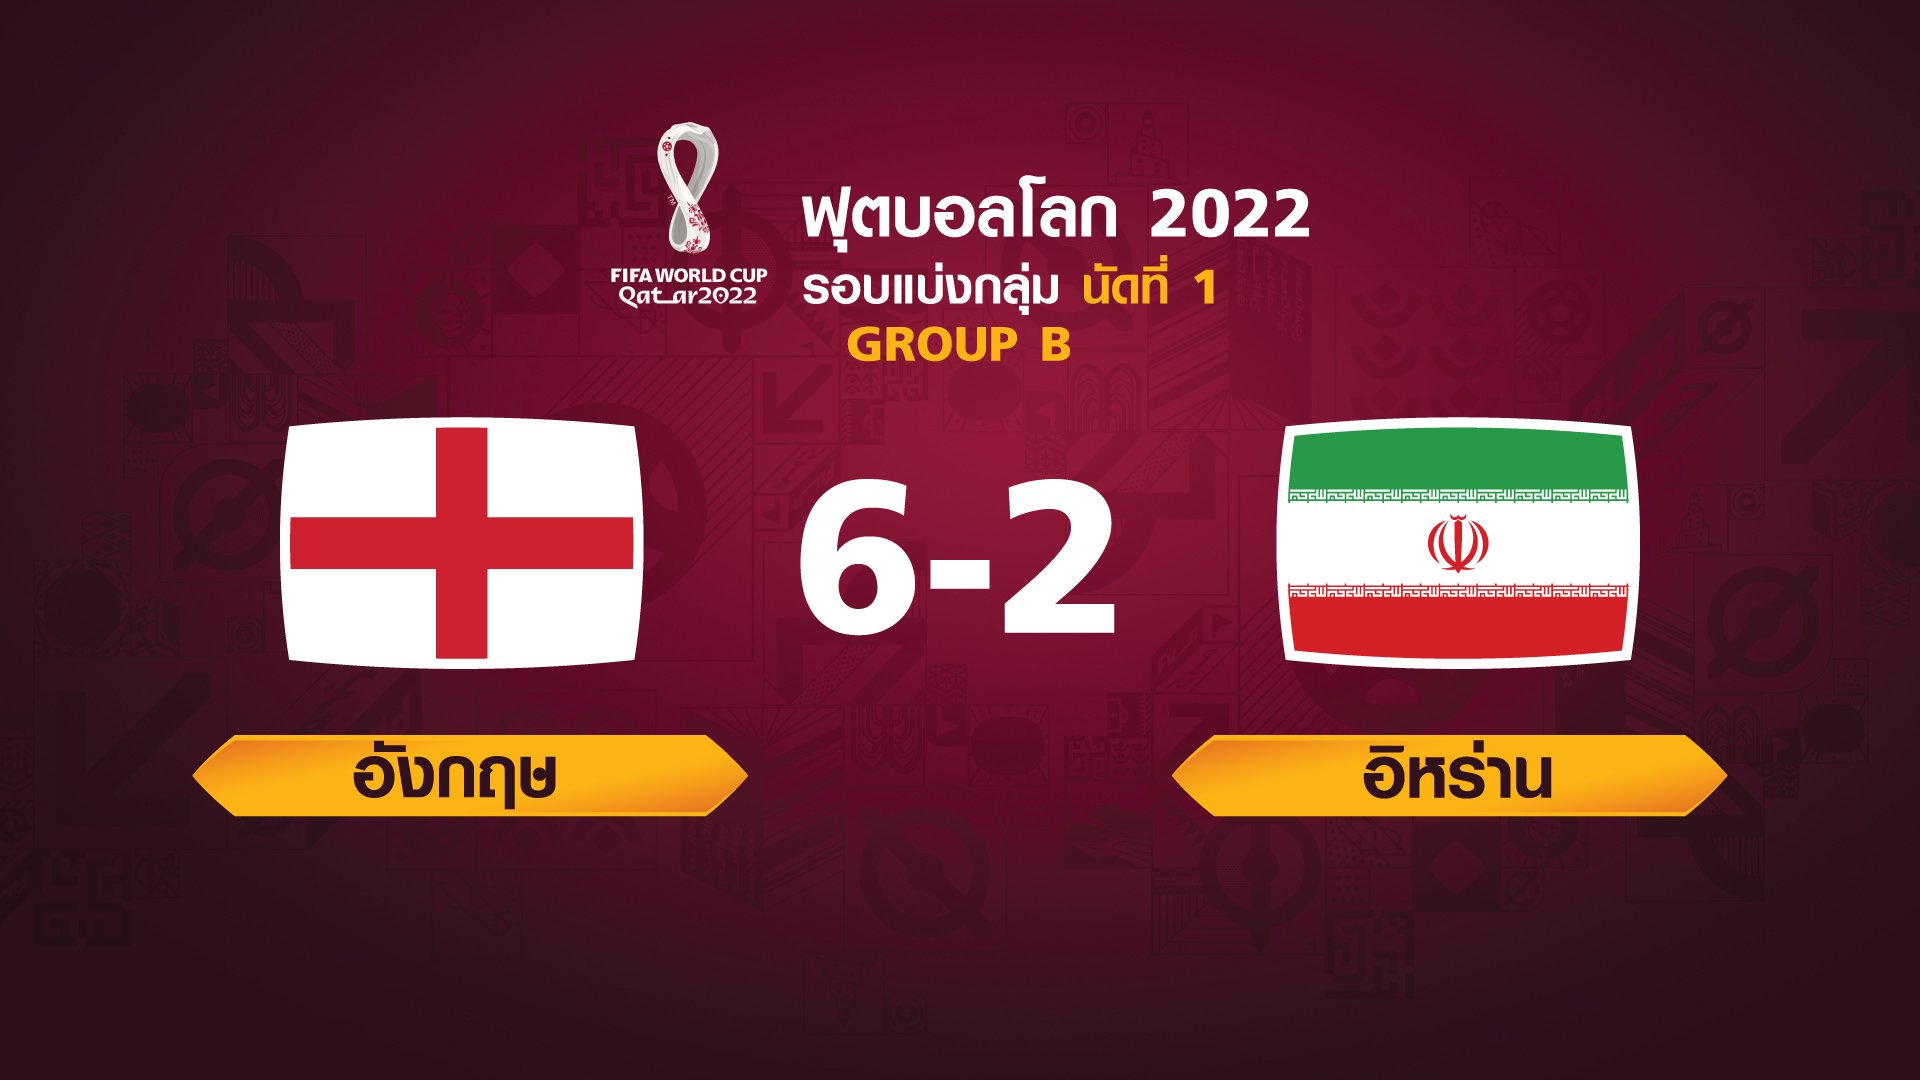 ฟุตบอลโลก 2022 รอบแบ่งกลุ่ม นัดแรก ระหว่าง England vs Iran